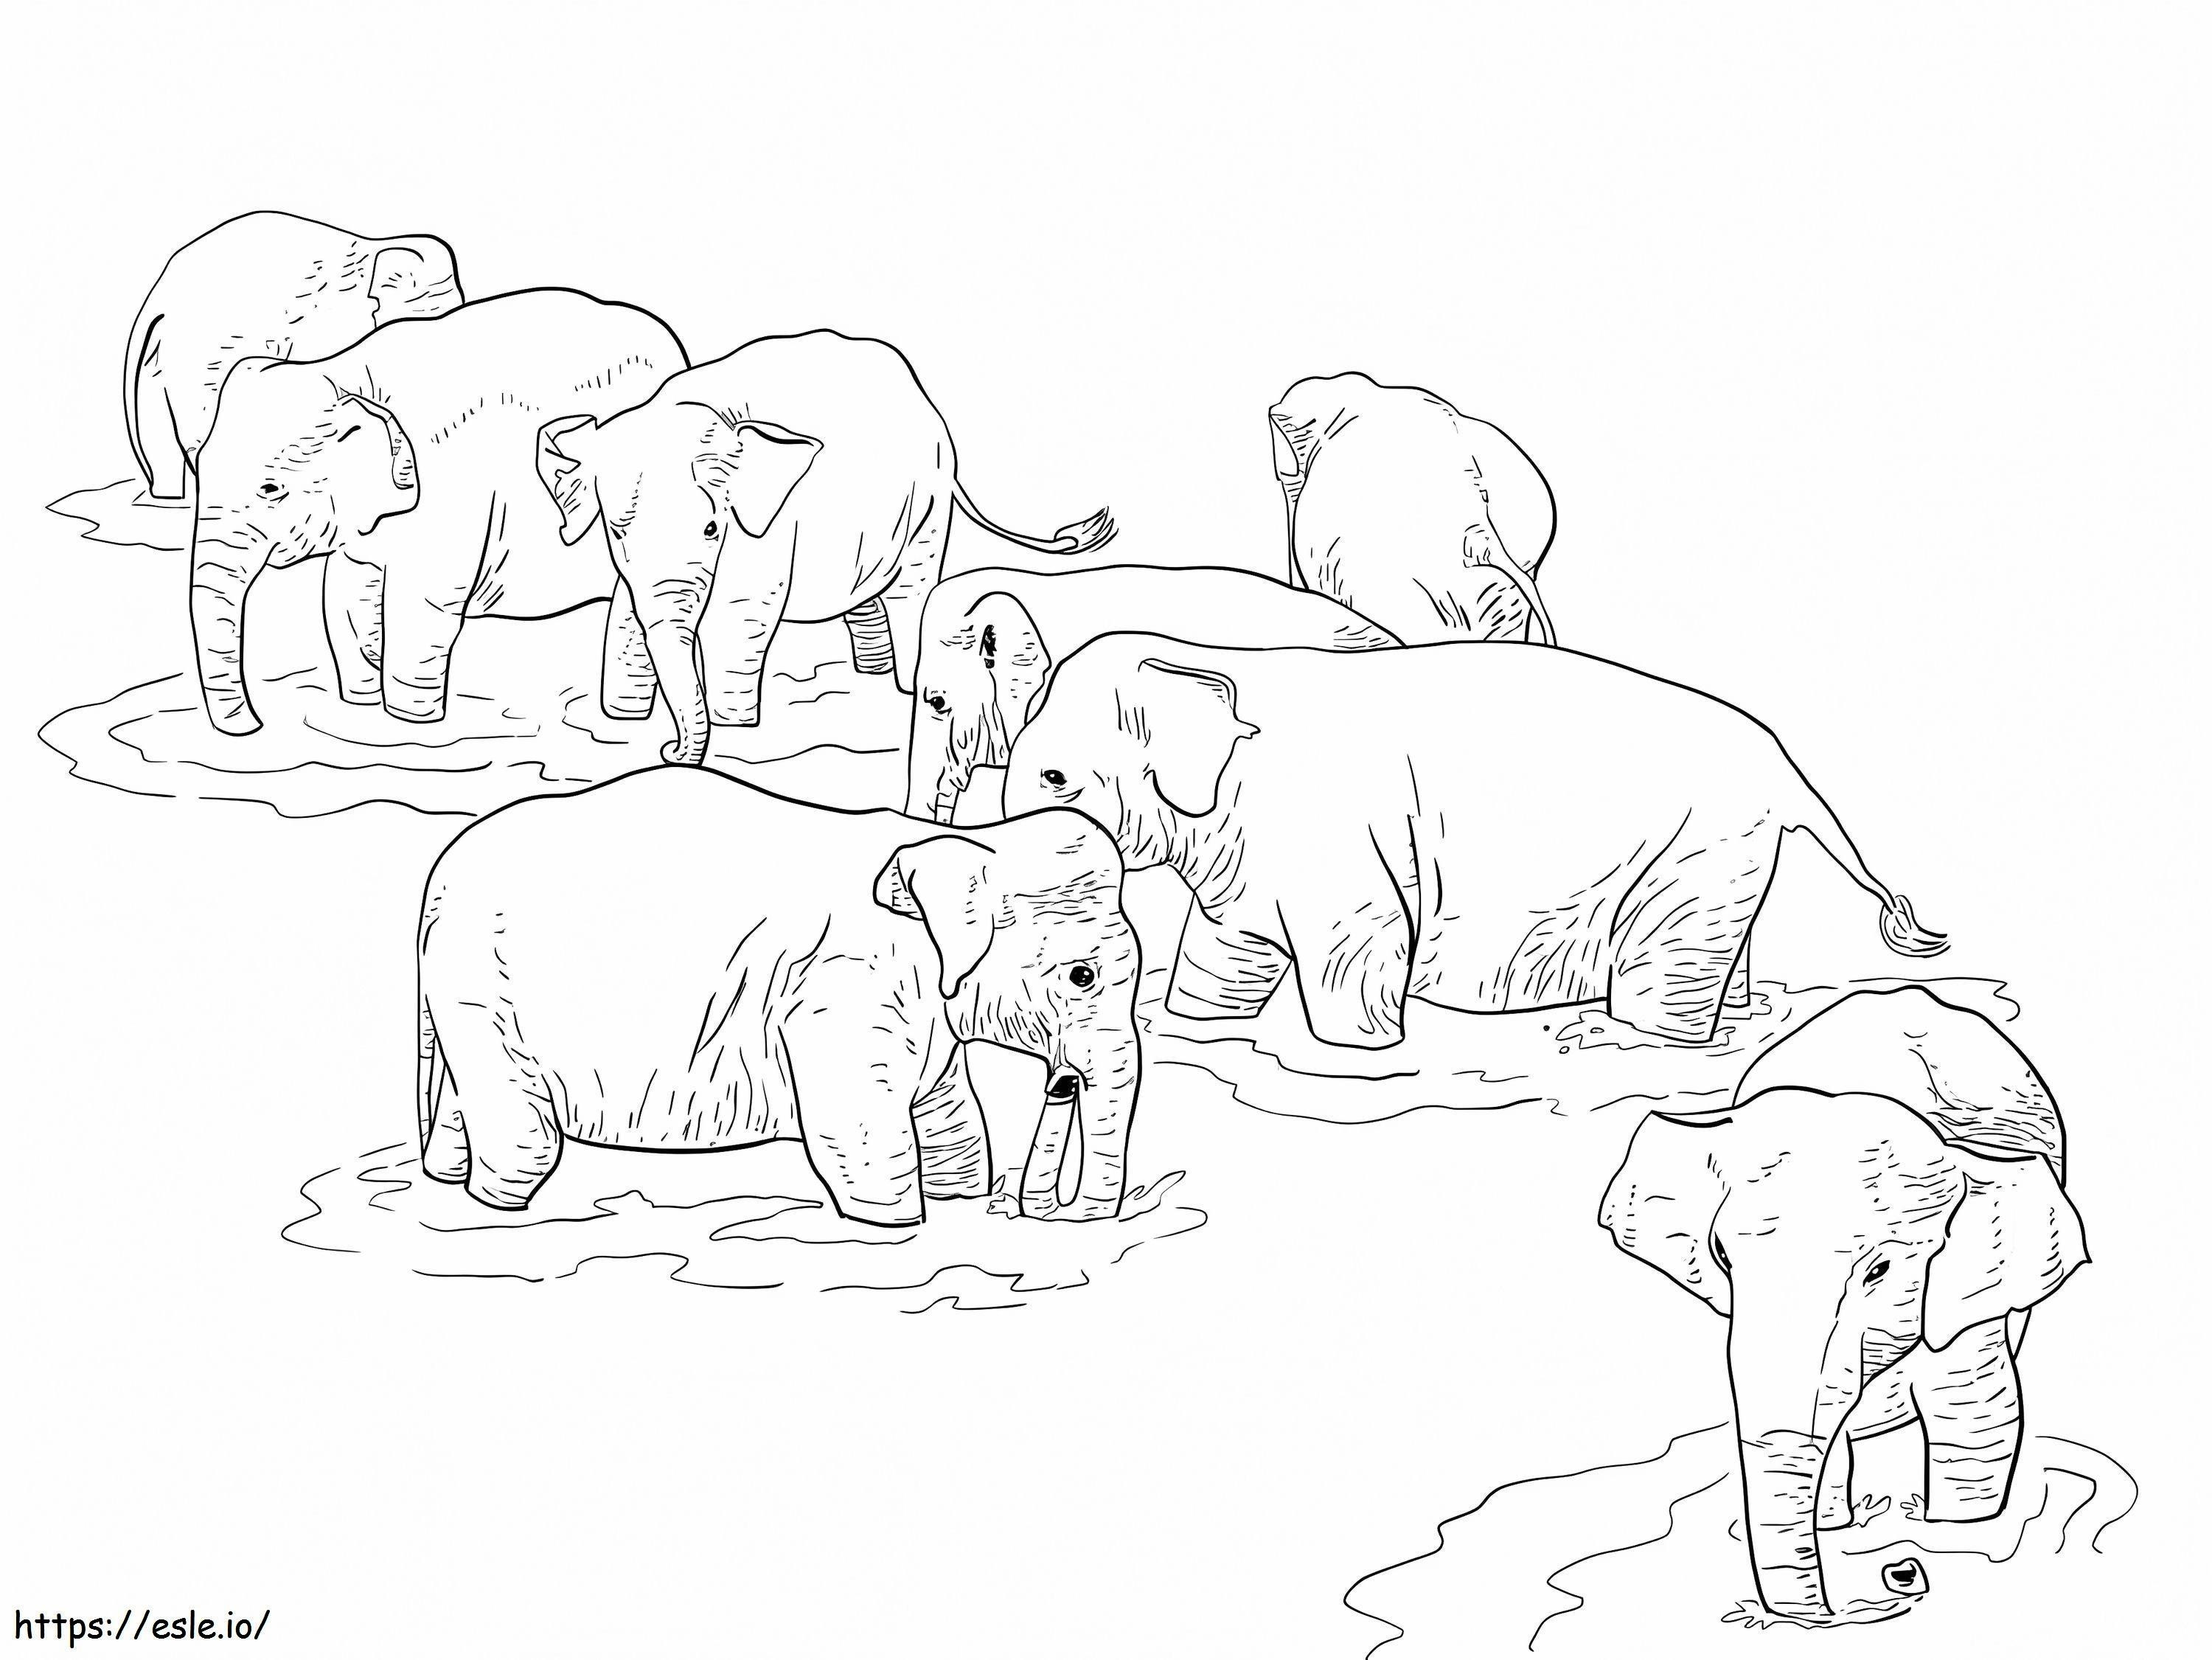 Shri Lanka Elephants coloring page